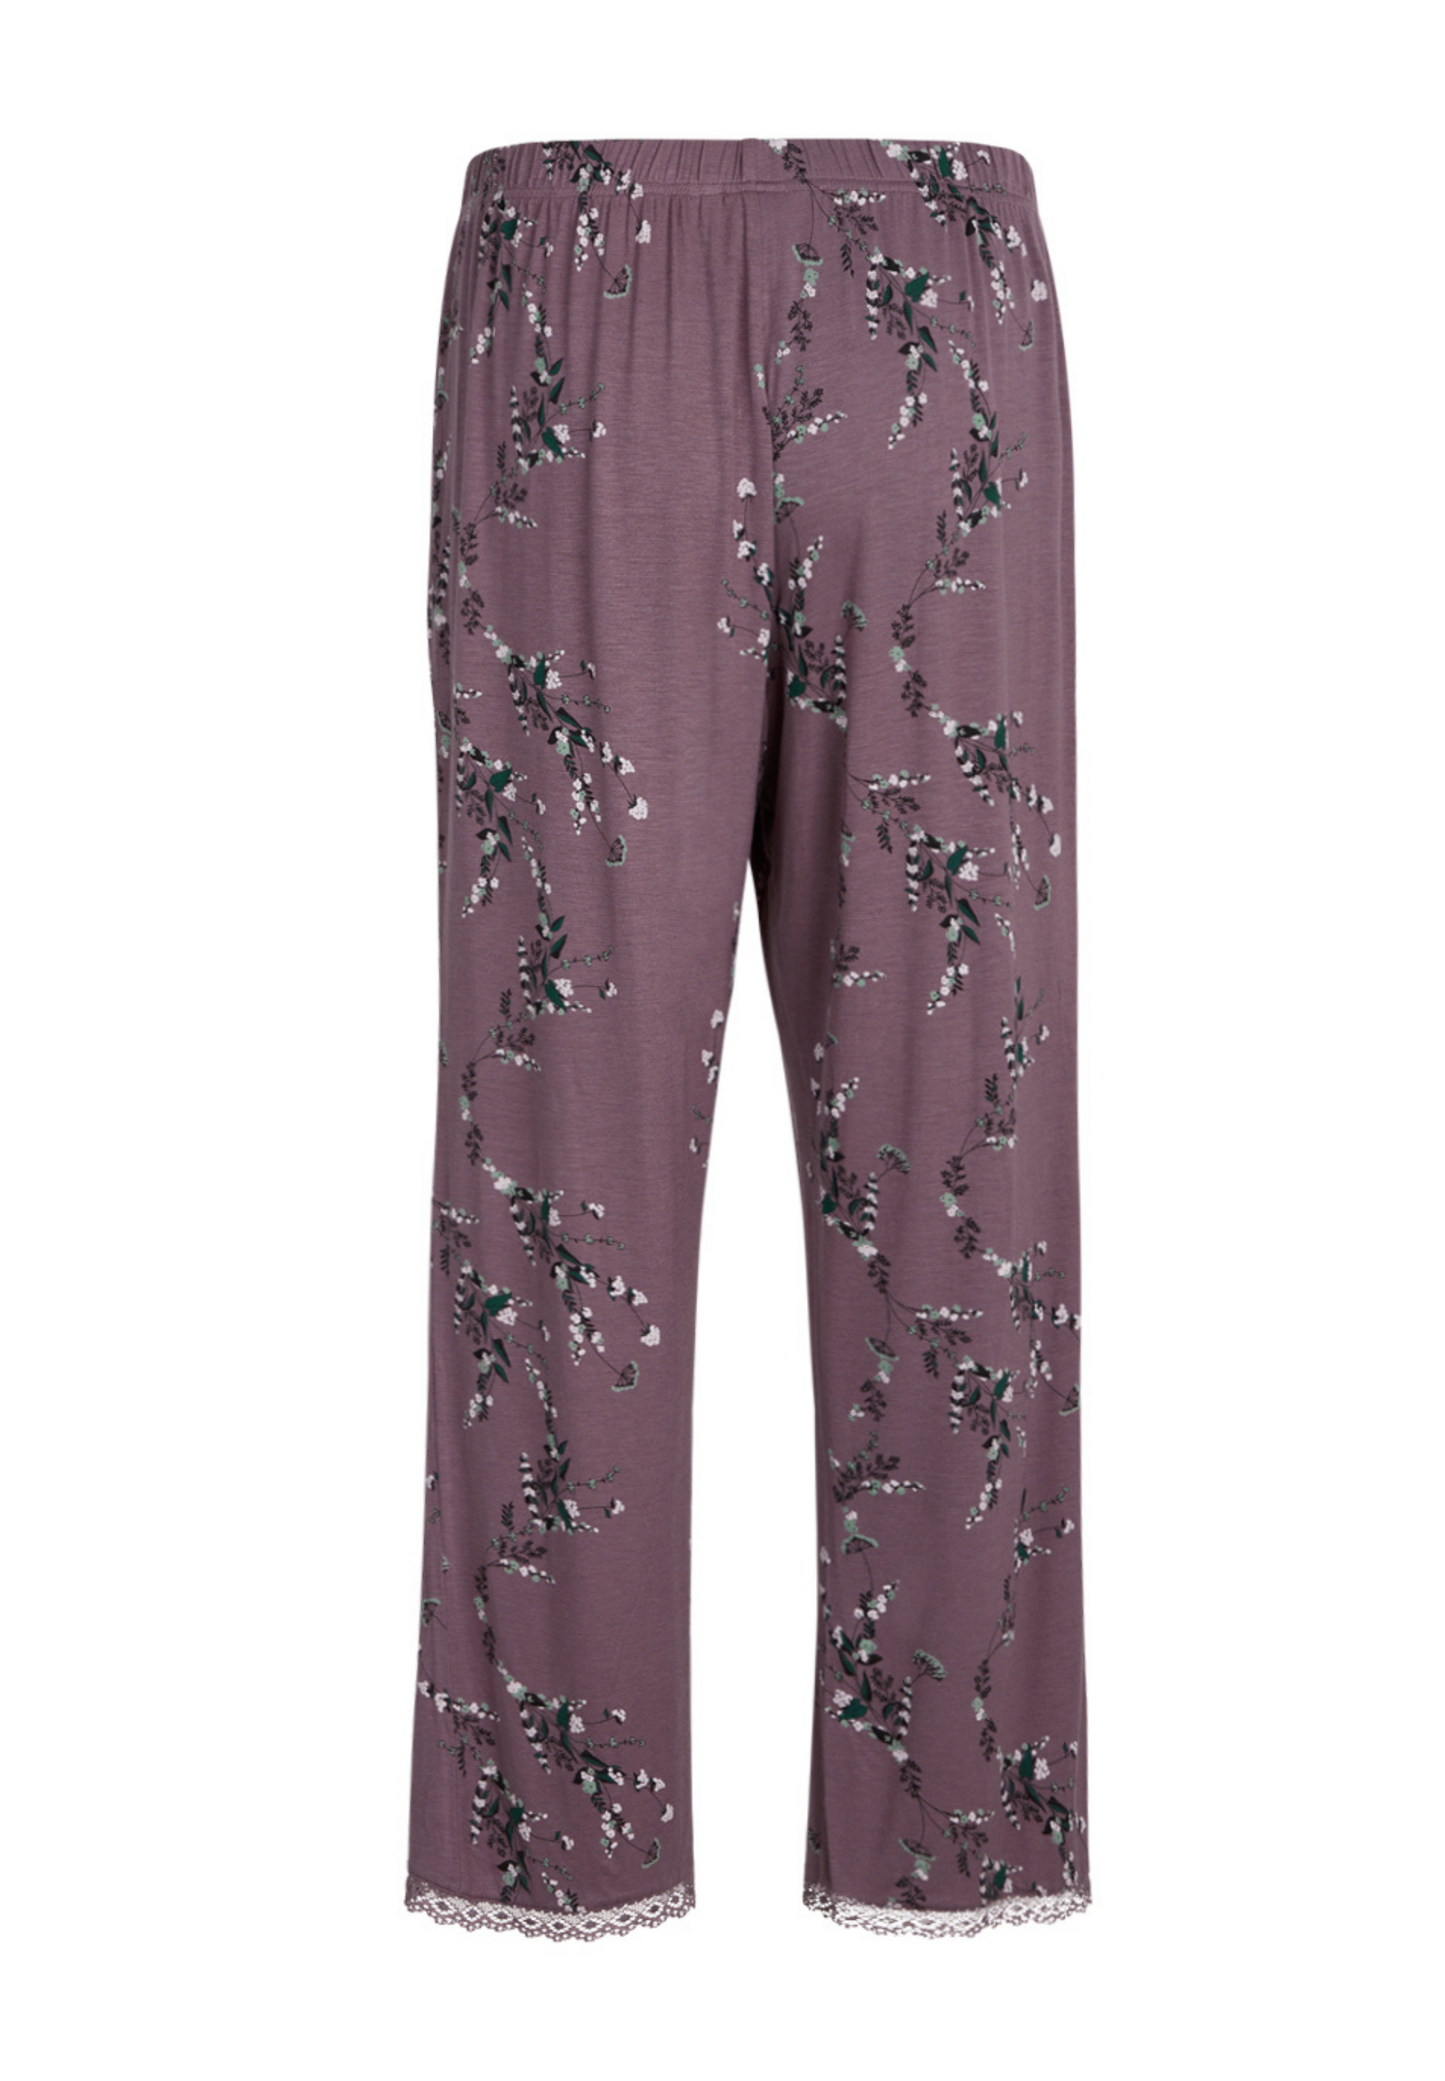 Jasmin Pyjamasbukser med print moonscape